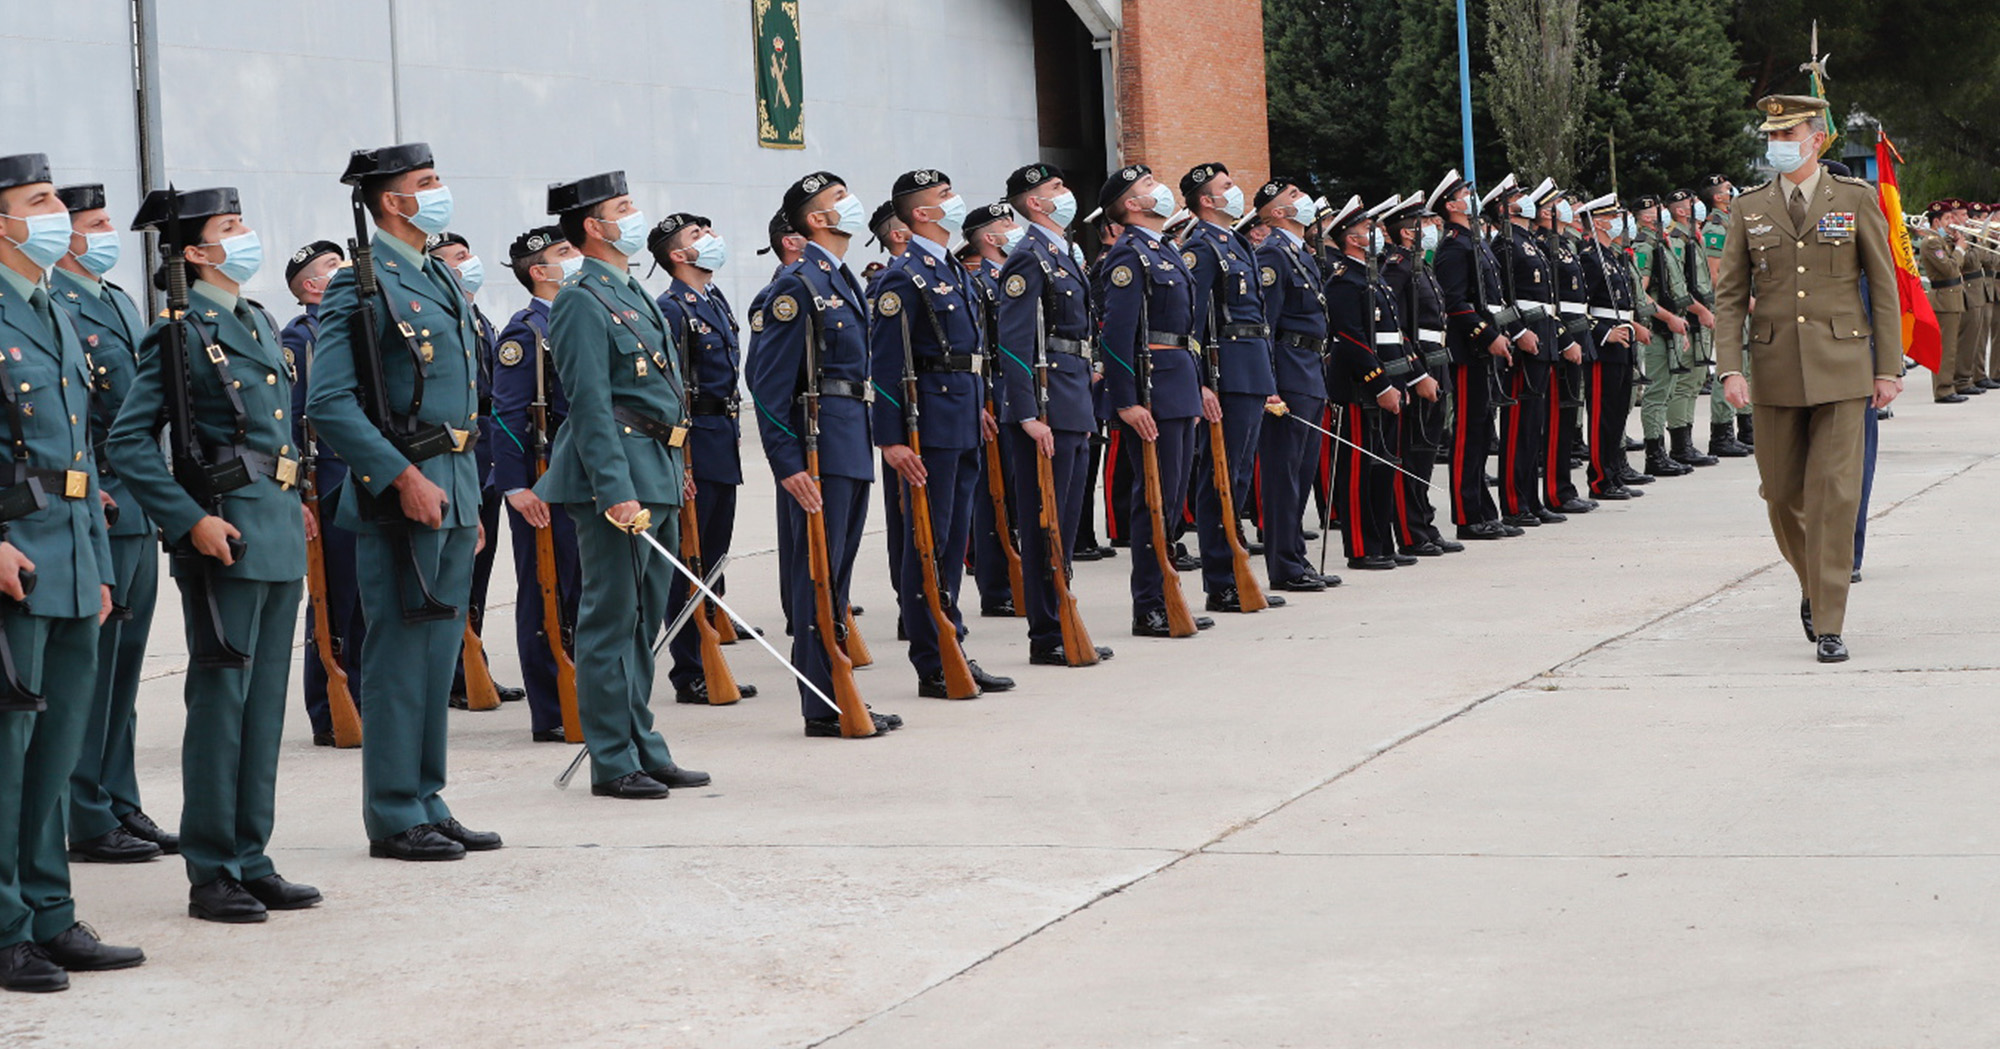 La de vestir uniformes militares originales - El Corte Militar